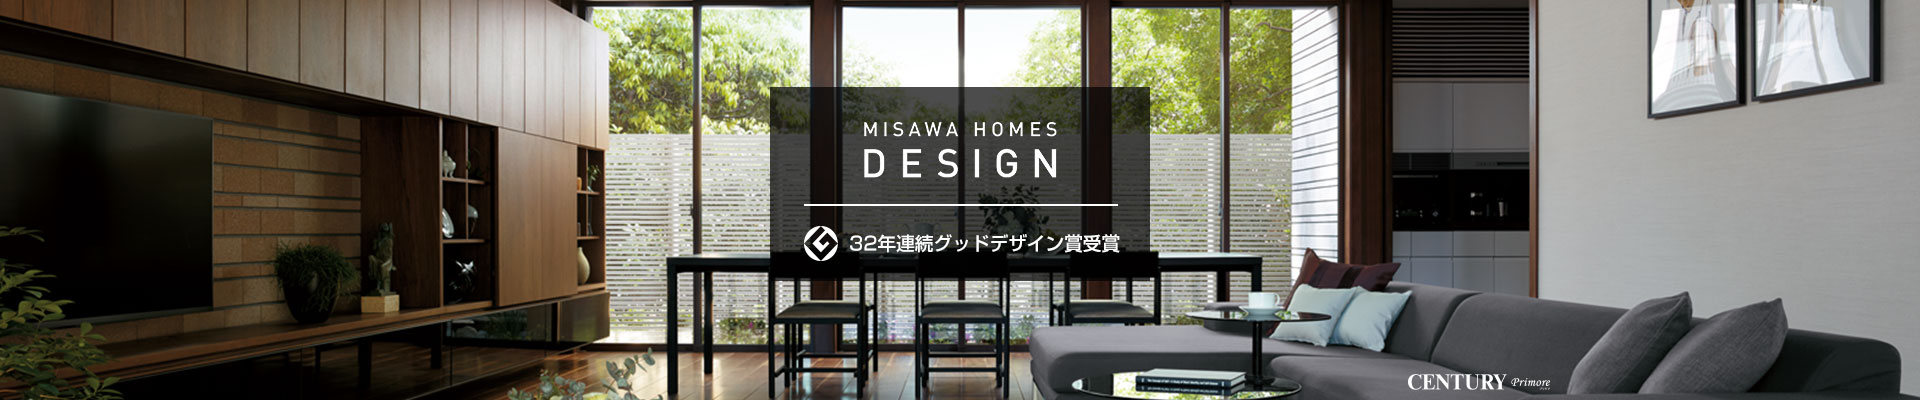 MISAWA HOMES DESIGN 32年連続グッドデザイン賞受賞